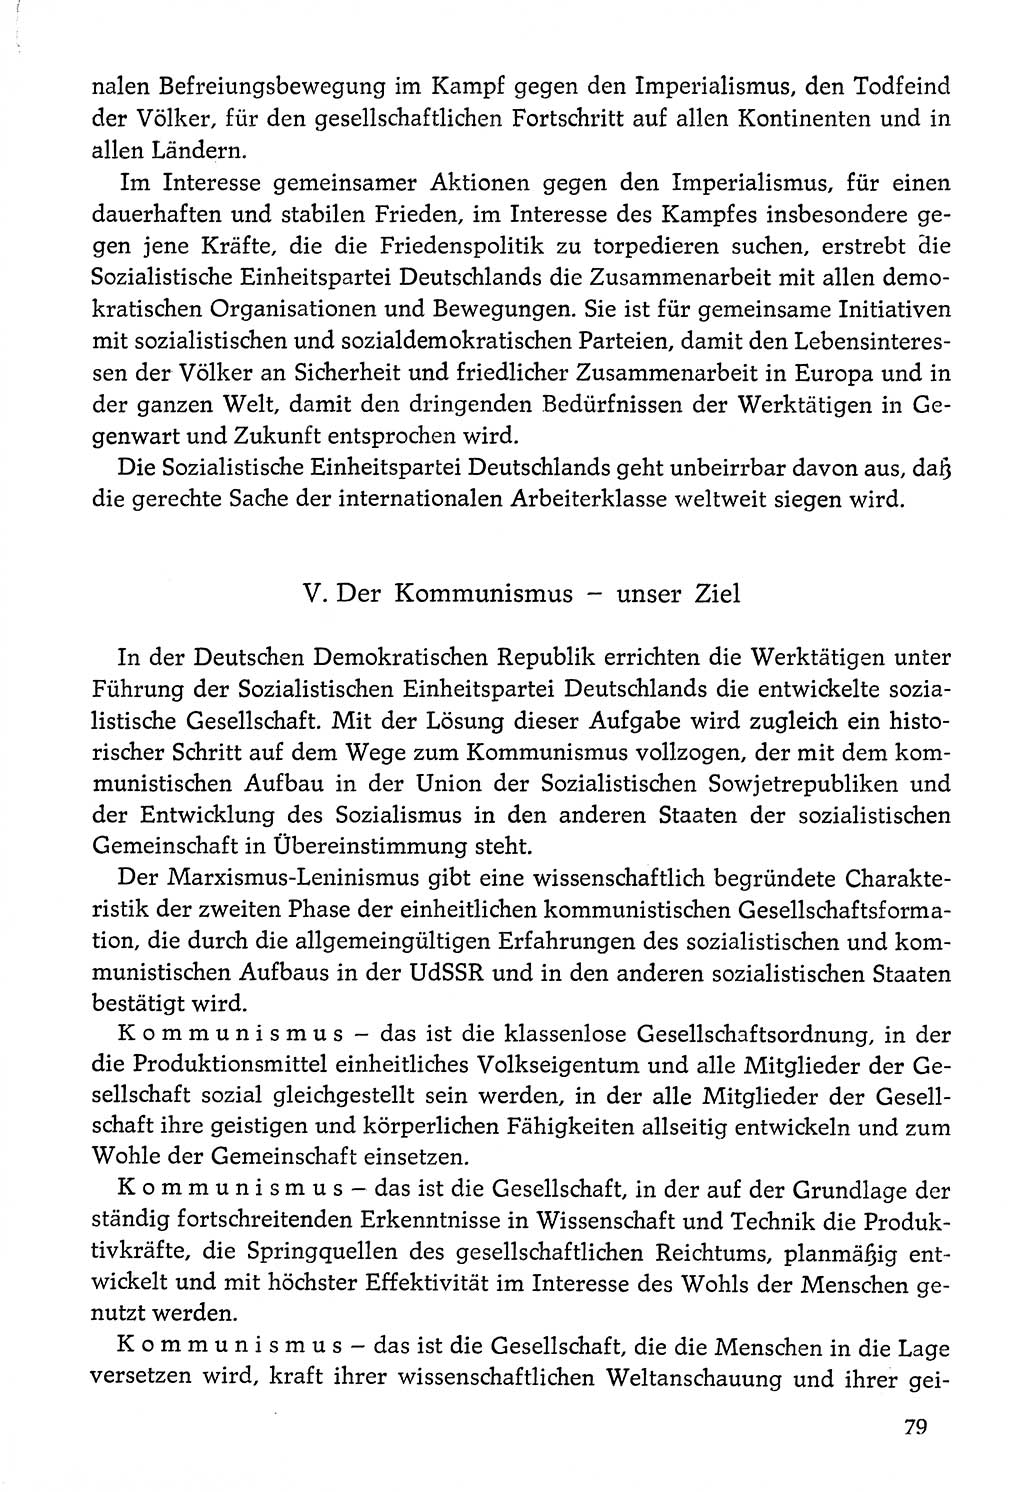 Dokumente der Sozialistischen Einheitspartei Deutschlands (SED) [Deutsche Demokratische Republik (DDR)] 1976-1977, Seite 79 (Dok. SED DDR 1976-1977, S. 79)